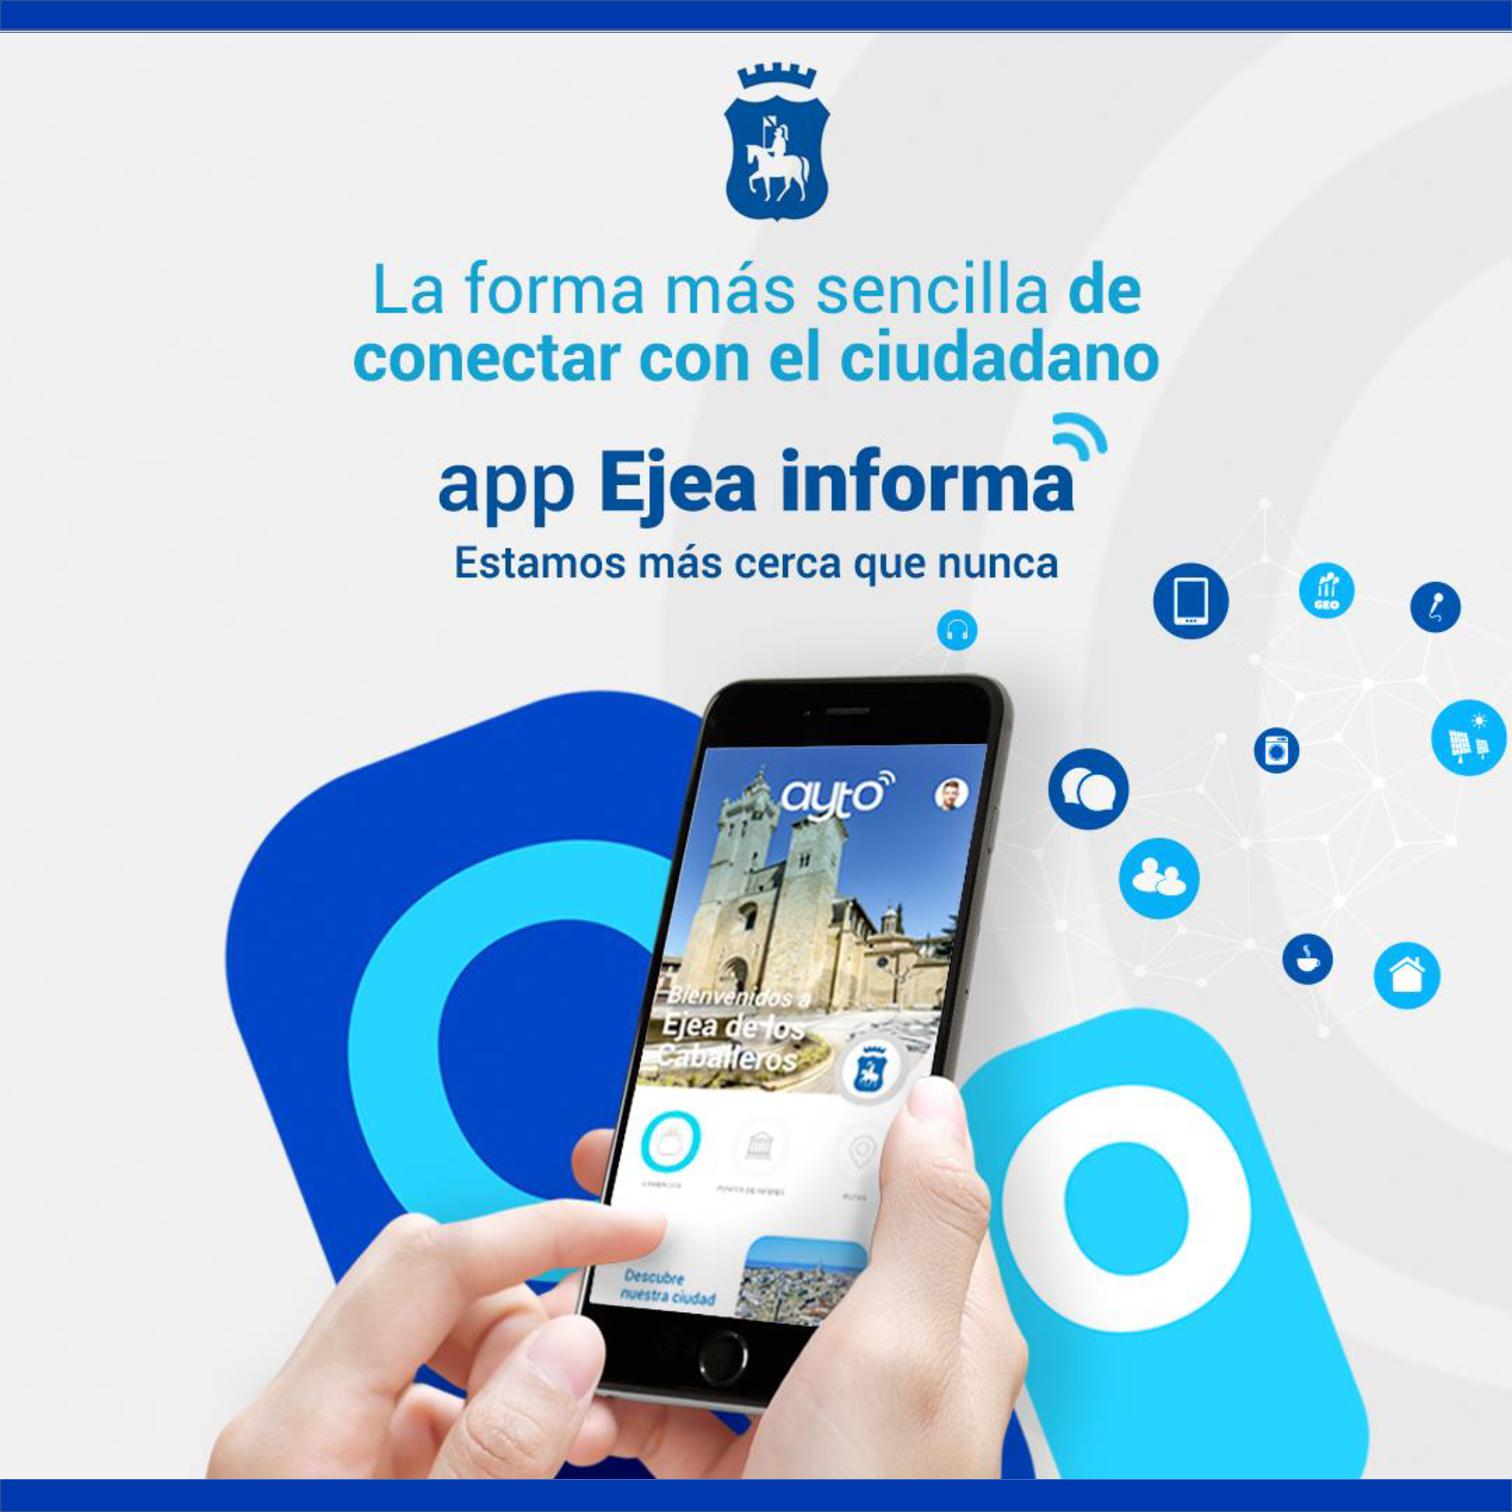 En este momento estás viendo ‘Ejea Informa’ la nueva App del Ayuntamiento de Ejea de los Caballeros